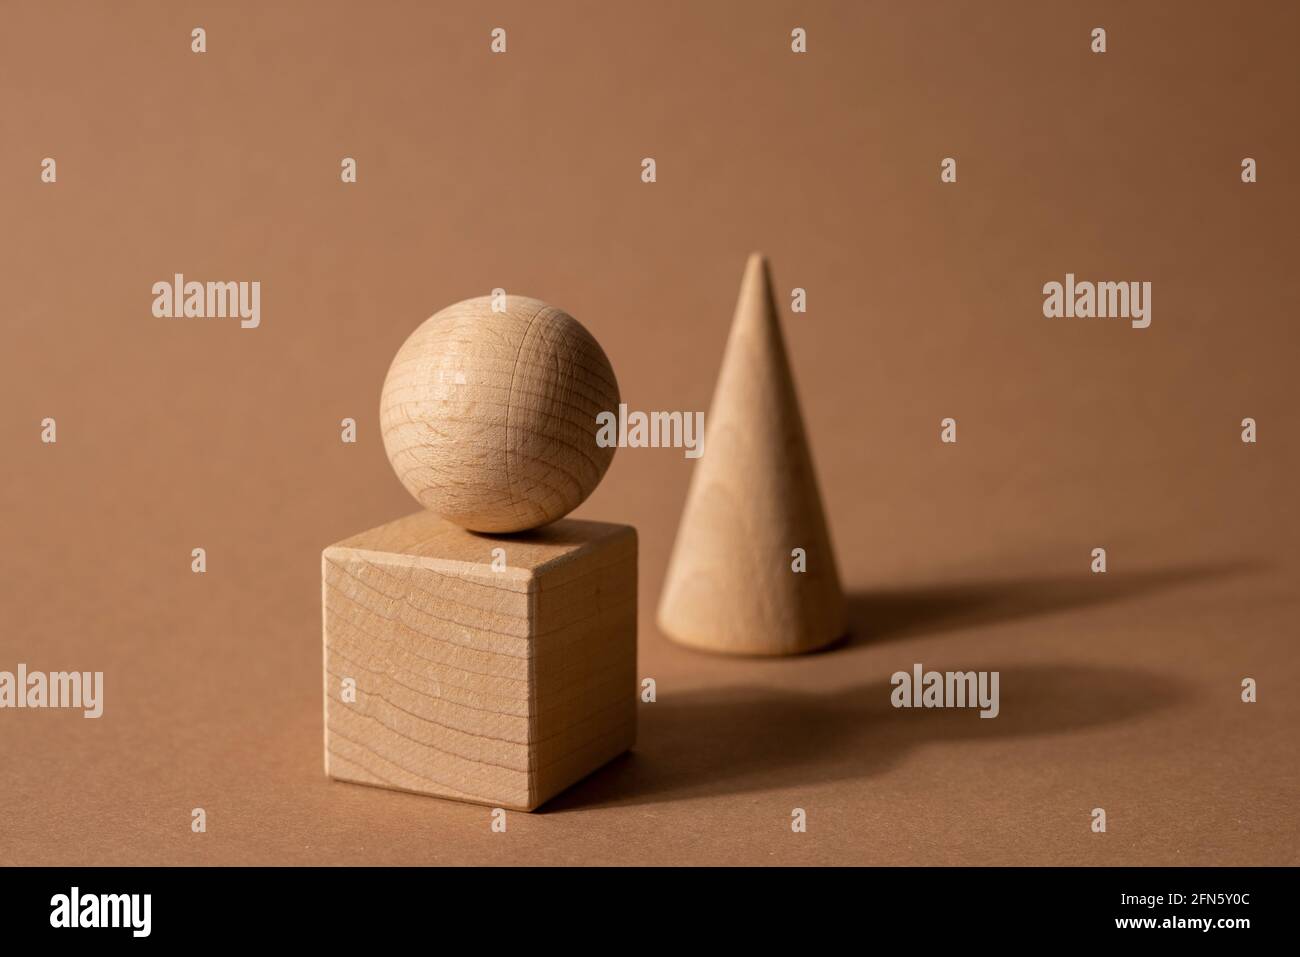 Holzspielzeug-Kindersorter mit kleinen Holzdetails in Form von geometrischen Formen Rechteck, Quadrat, Dreieck auf braunem Hintergrund, Figurenkonzept mit dunklen Schatten Stockfoto